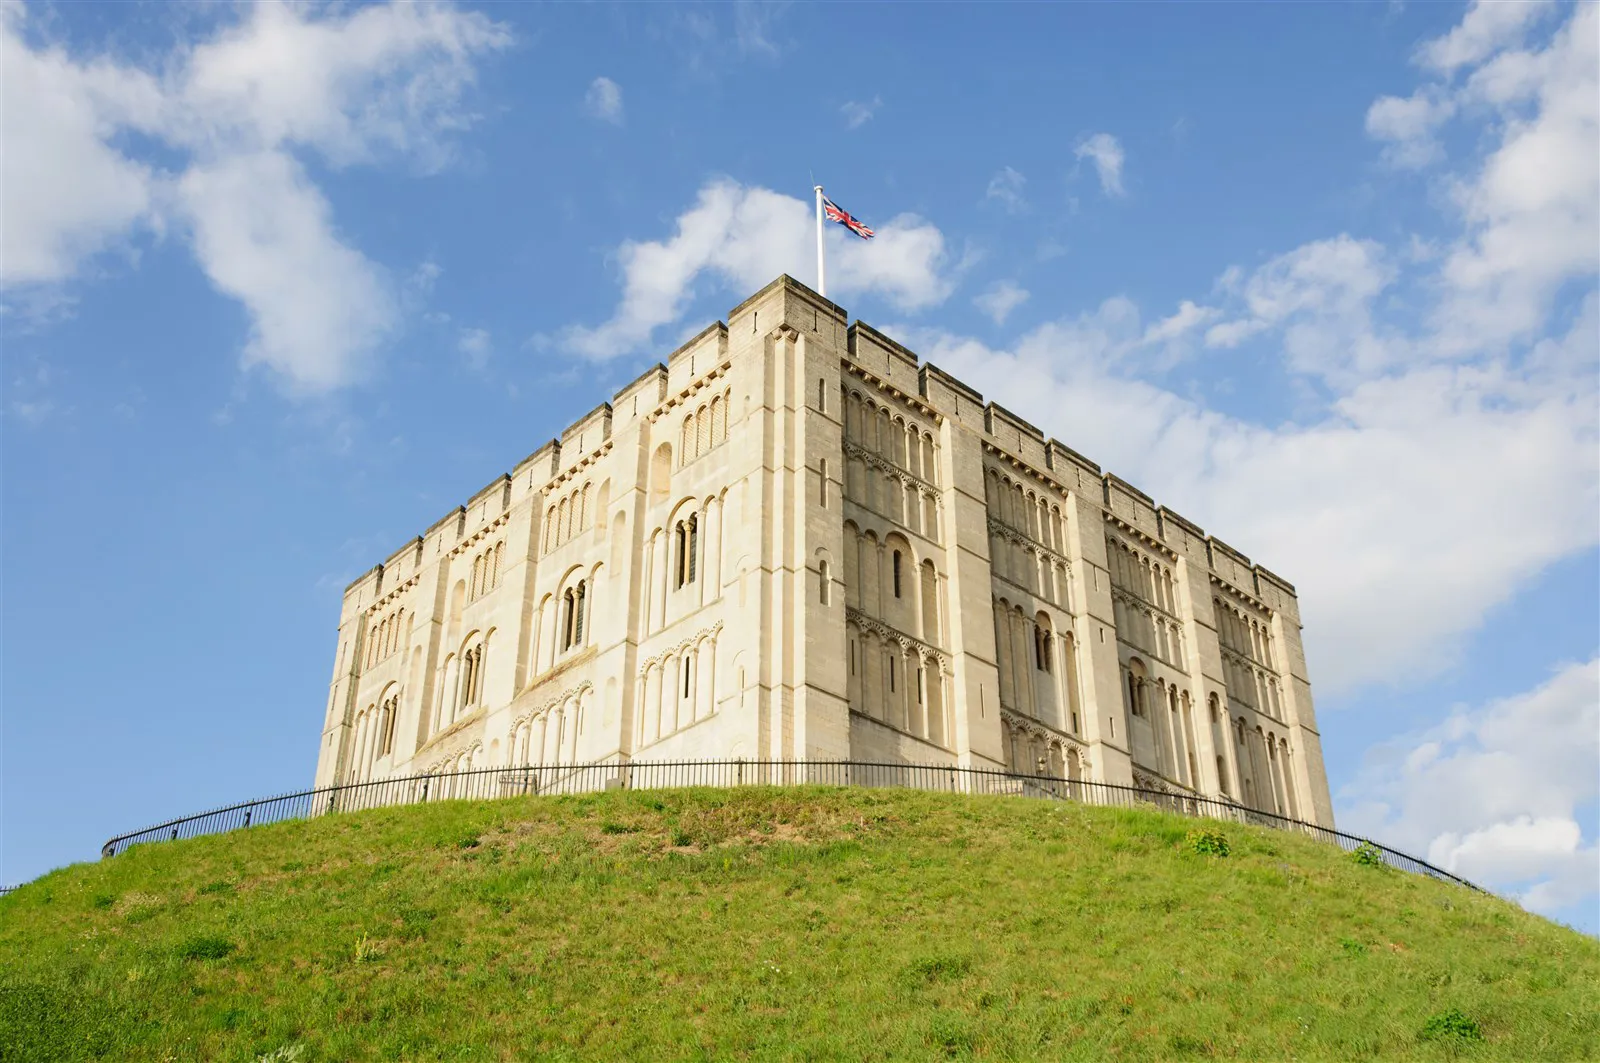 5 fantastic castles in Norfolk